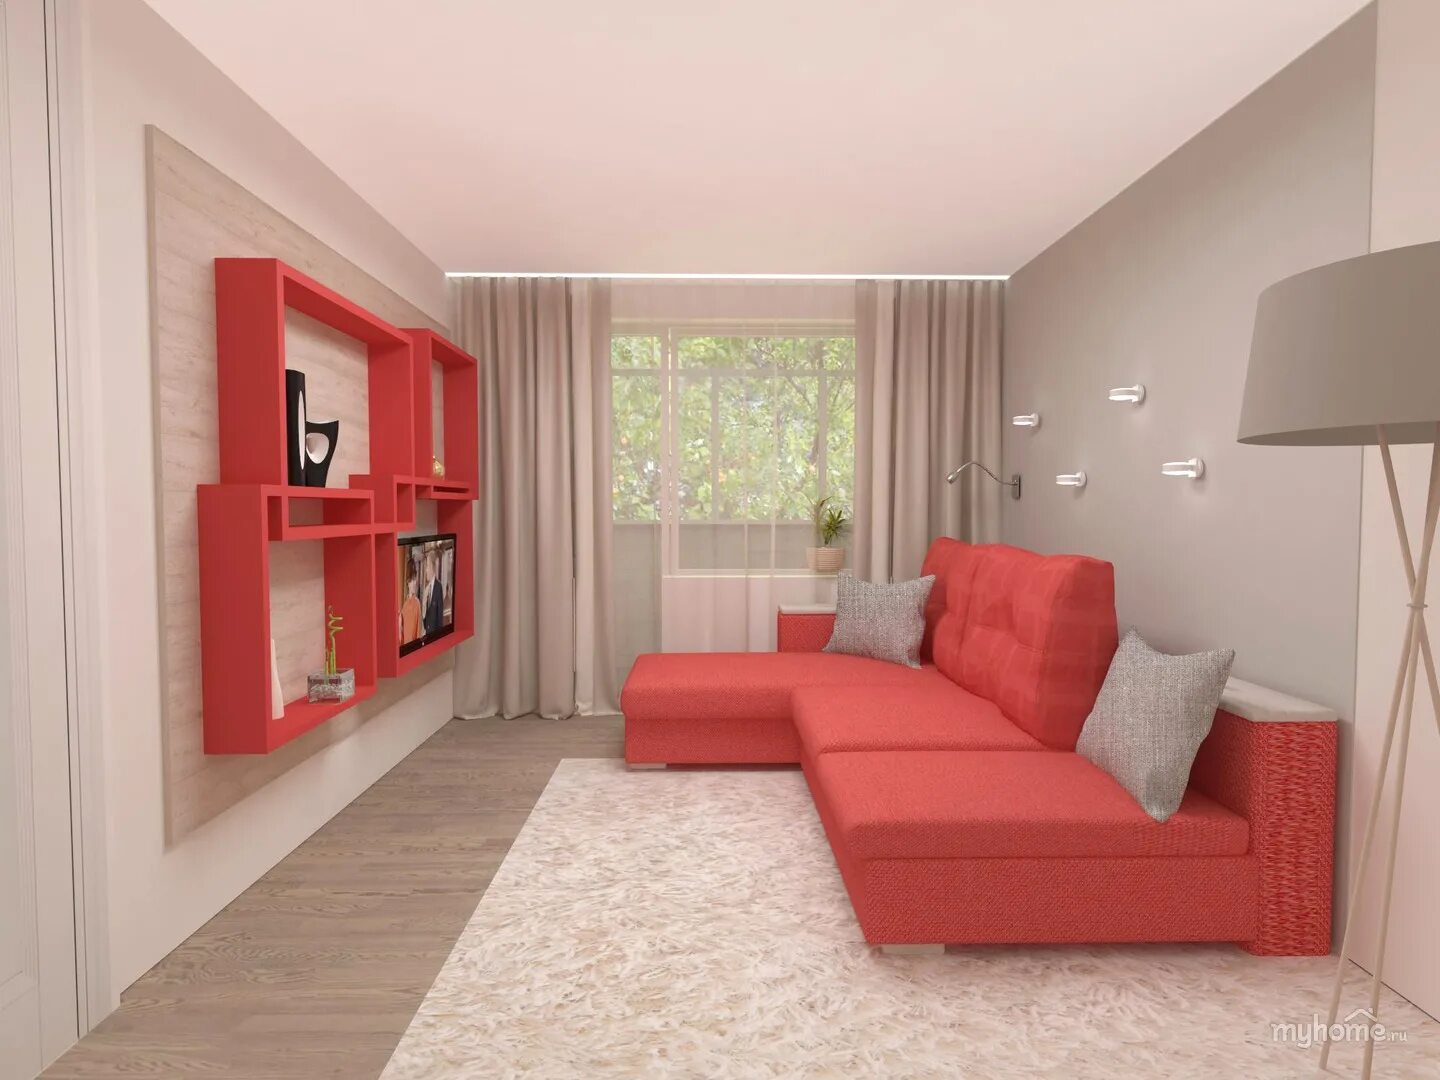 Размещение мебели в комнате. Интерьер комнаты с красным диваном. Интерьер однокомнатной квартиры в Красном. Интерьер комнаты в однокомнатной квартире. Красный диван в интерьере маленькой комнаты.